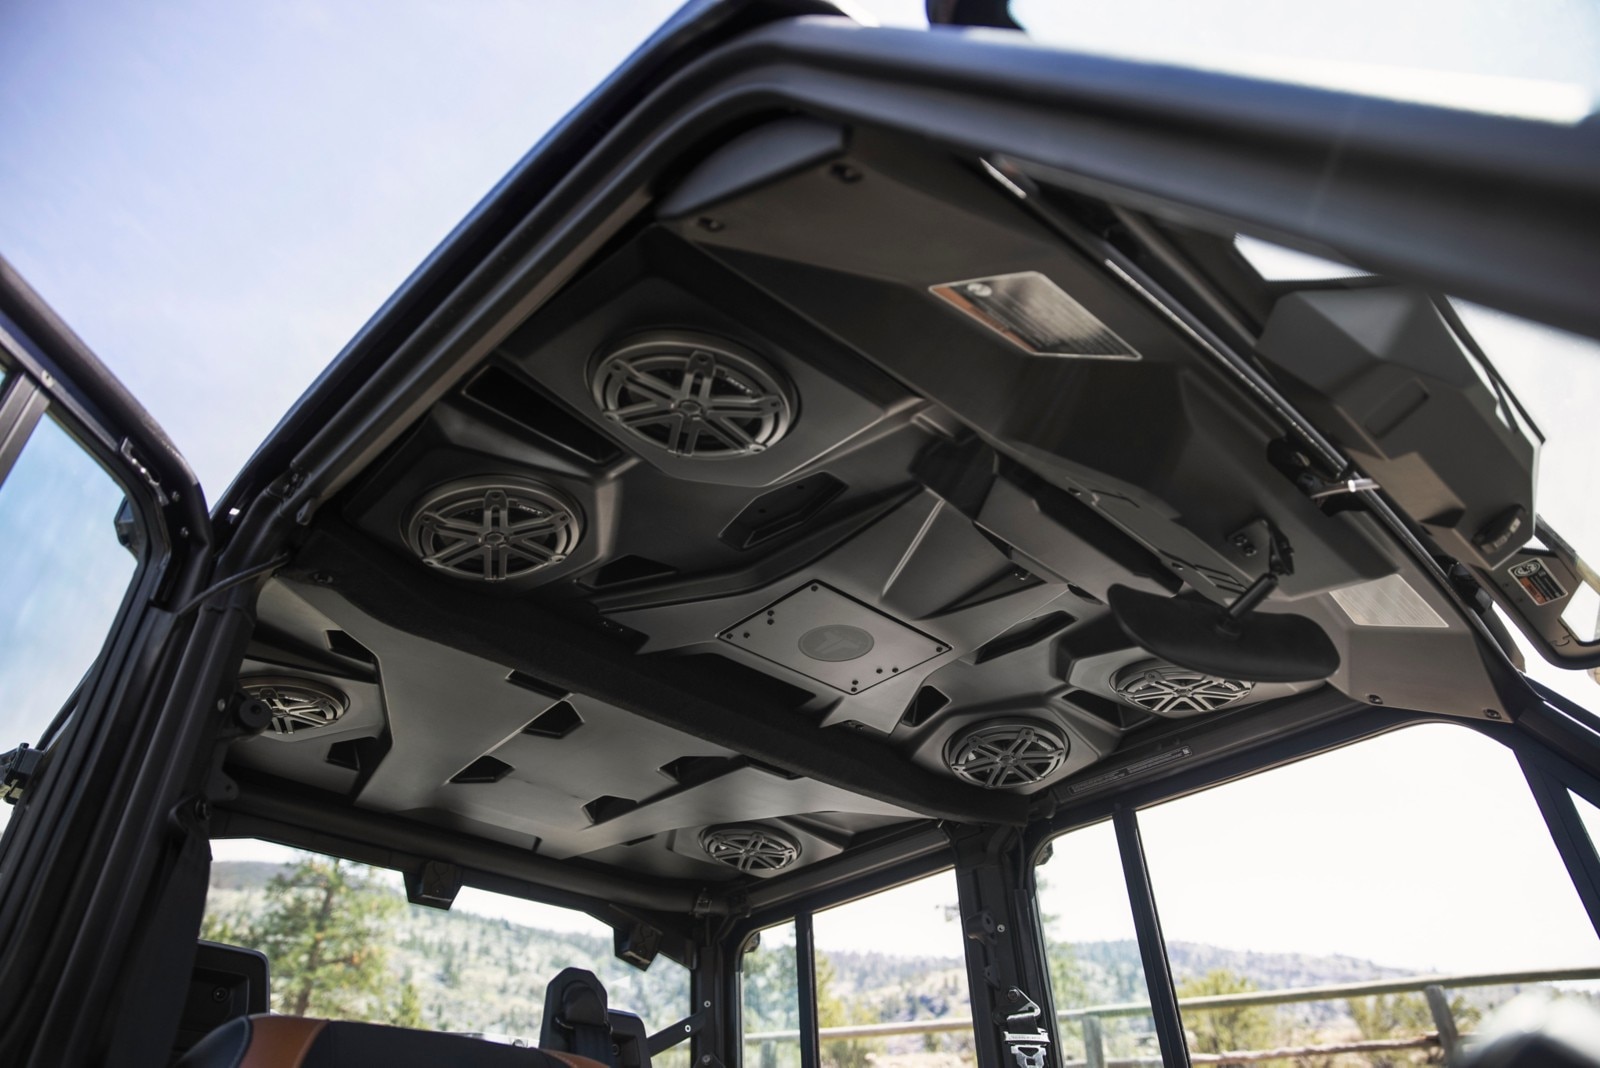 Nowy dach audio Can-Am Traxter w modelu Lone Star CAB, z 6 głośnikami